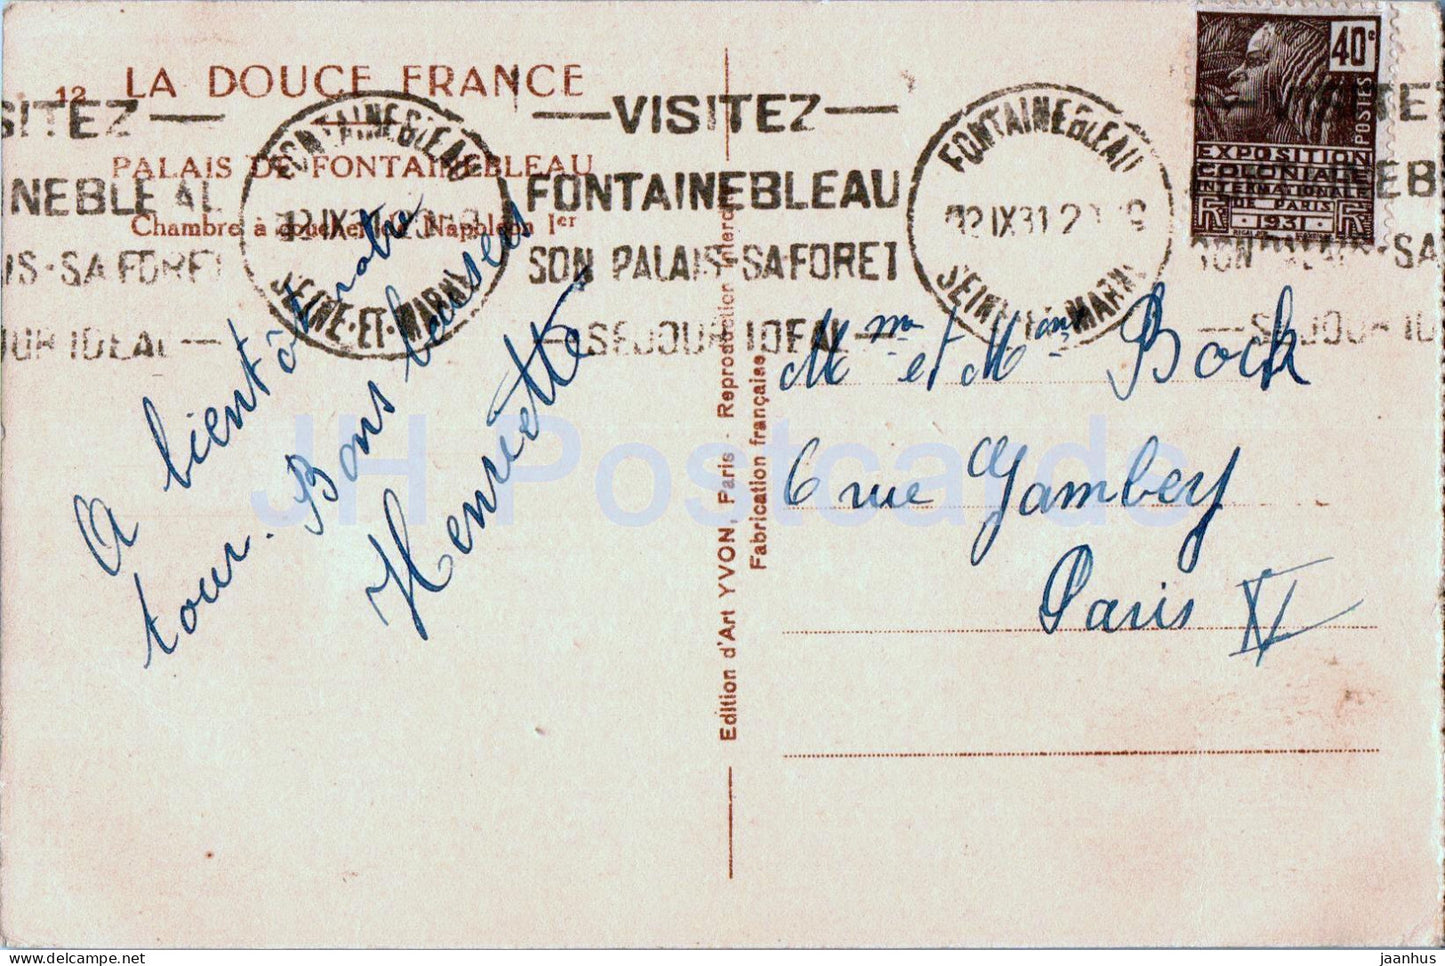 Palais de Fontainebleau – Chambre a Coucher Napoleon – 12 – alte Postkarte – 1931 – Frankreich – gebraucht 